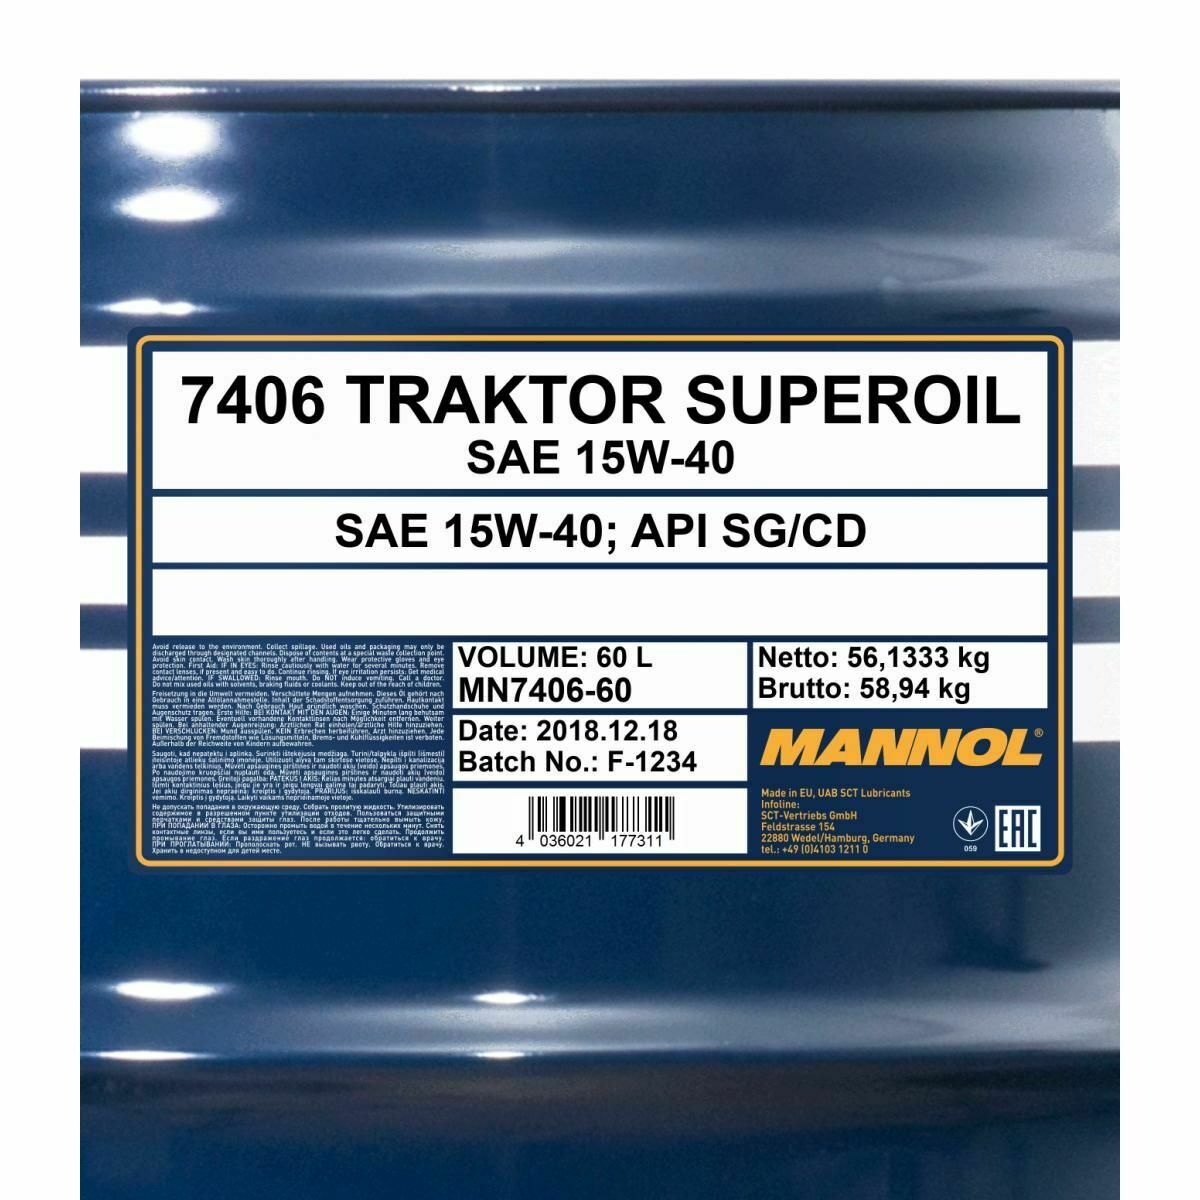 60 Liter MANNOL TRAKTOR SUPEROIL 15W-40 Motoröl Traktoröl